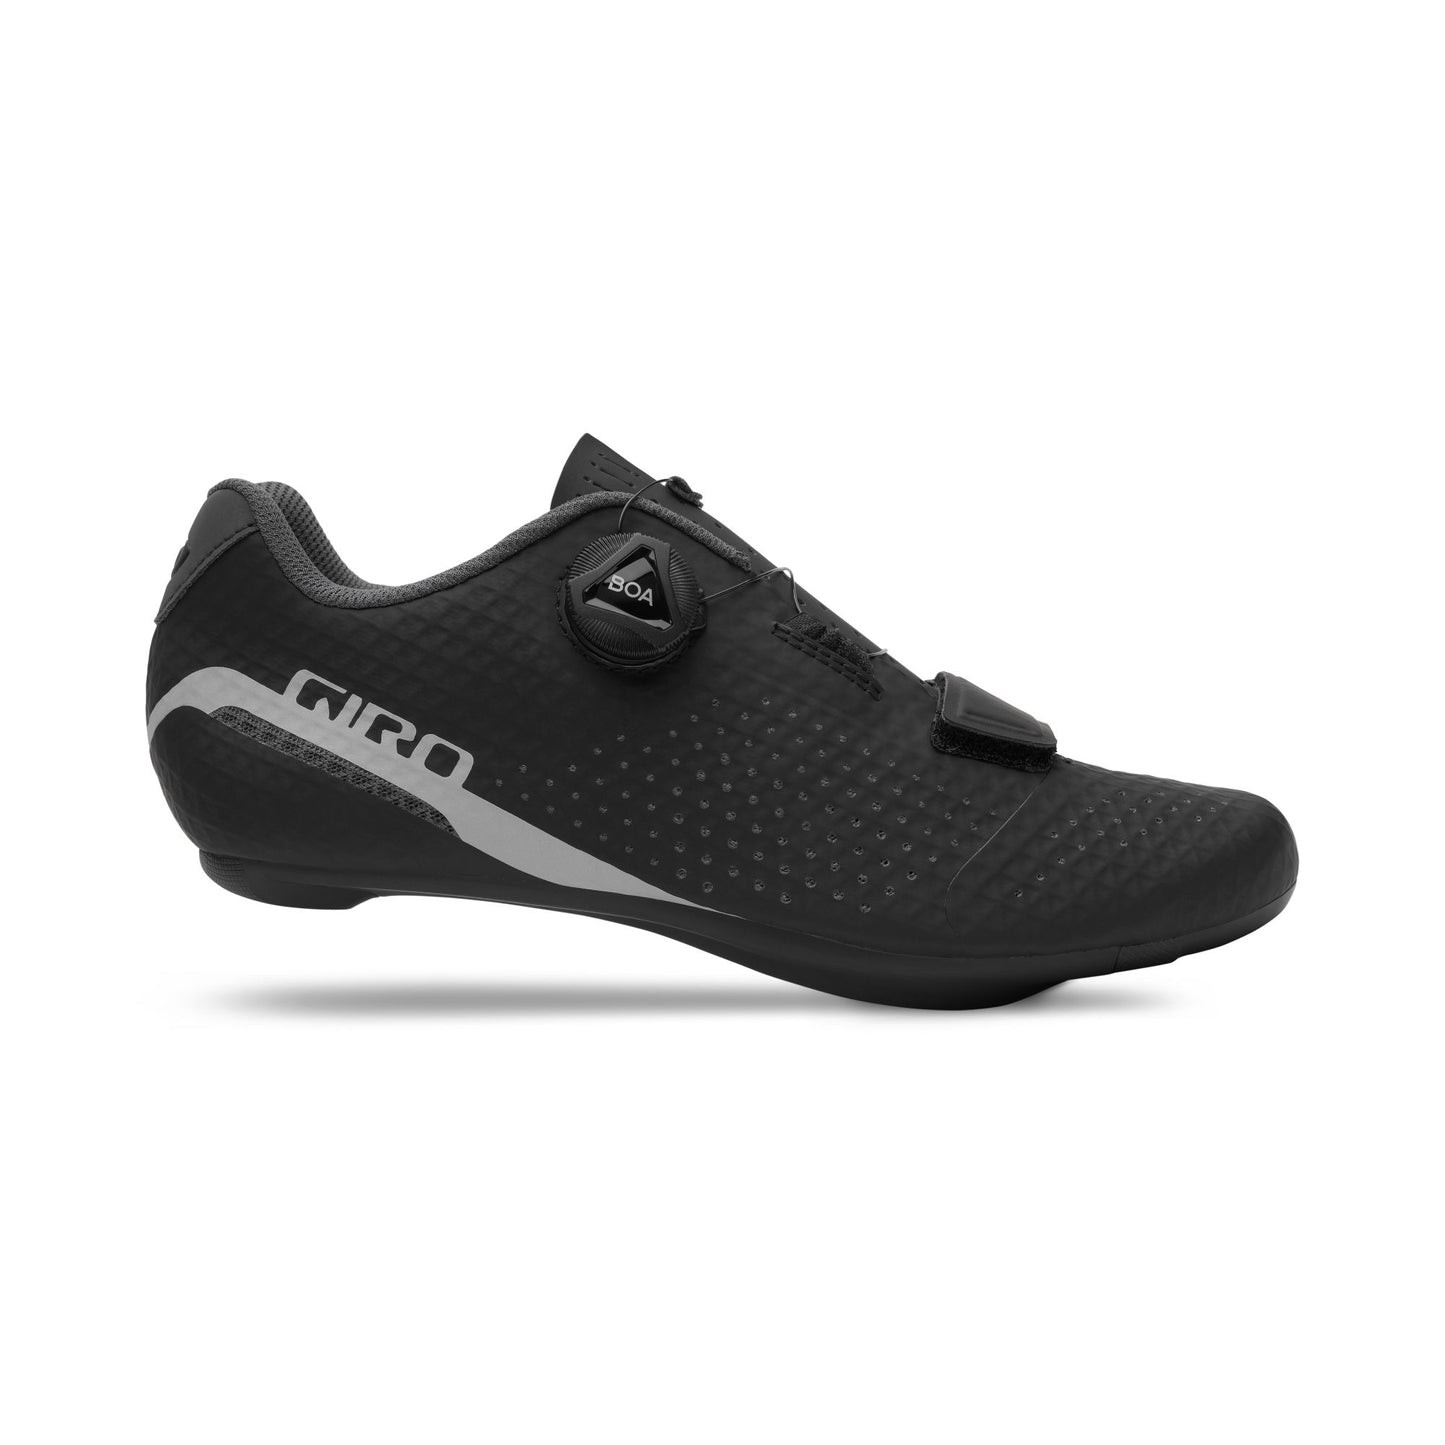 Giro Women's Cadet Shoe Black Bike Shoes